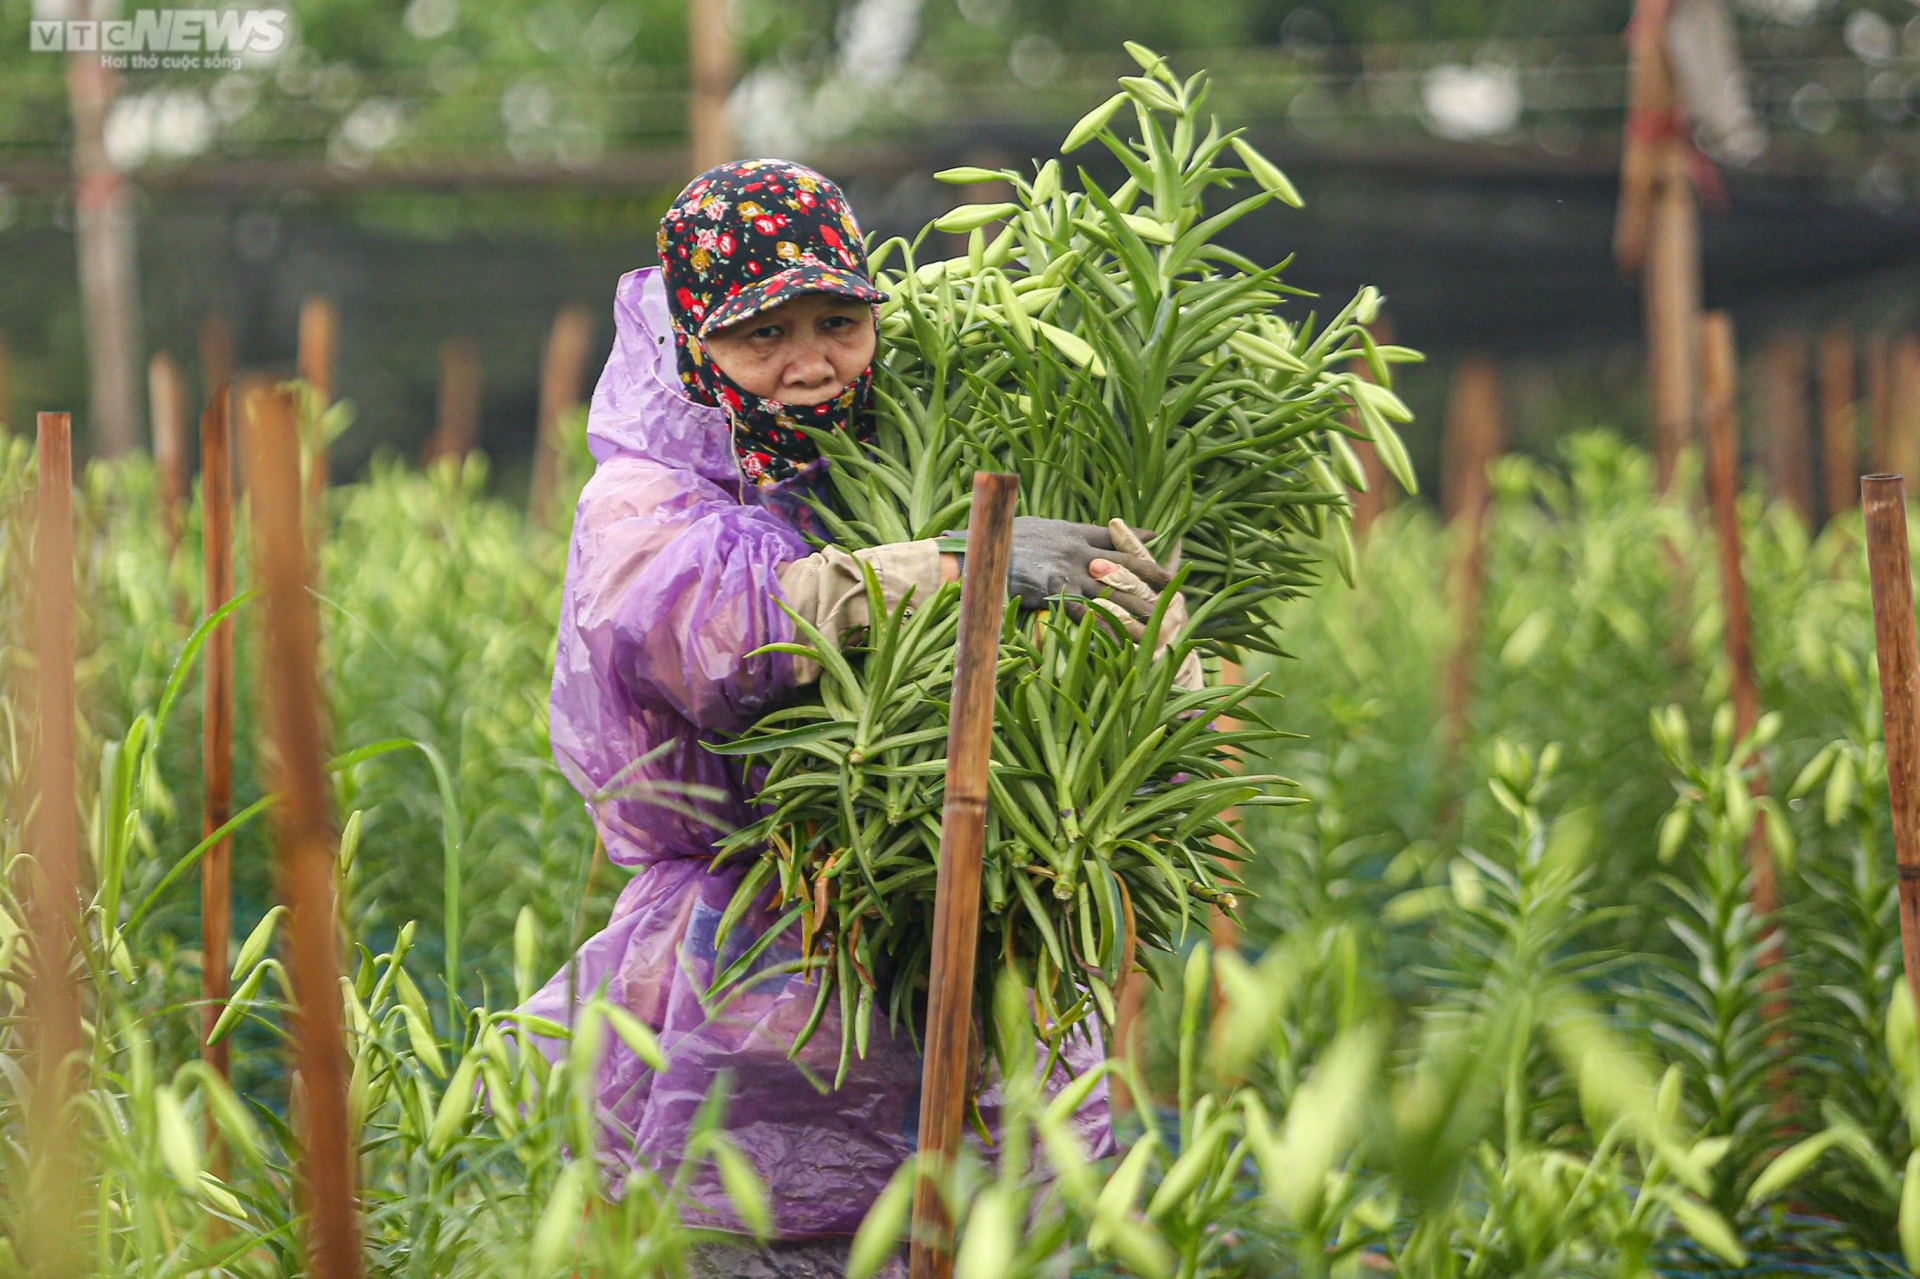 Hoa loa kèn vào vụ, nông dân ngoại thành Hà Nội thu chục triệu đồng mỗi ngày - 6